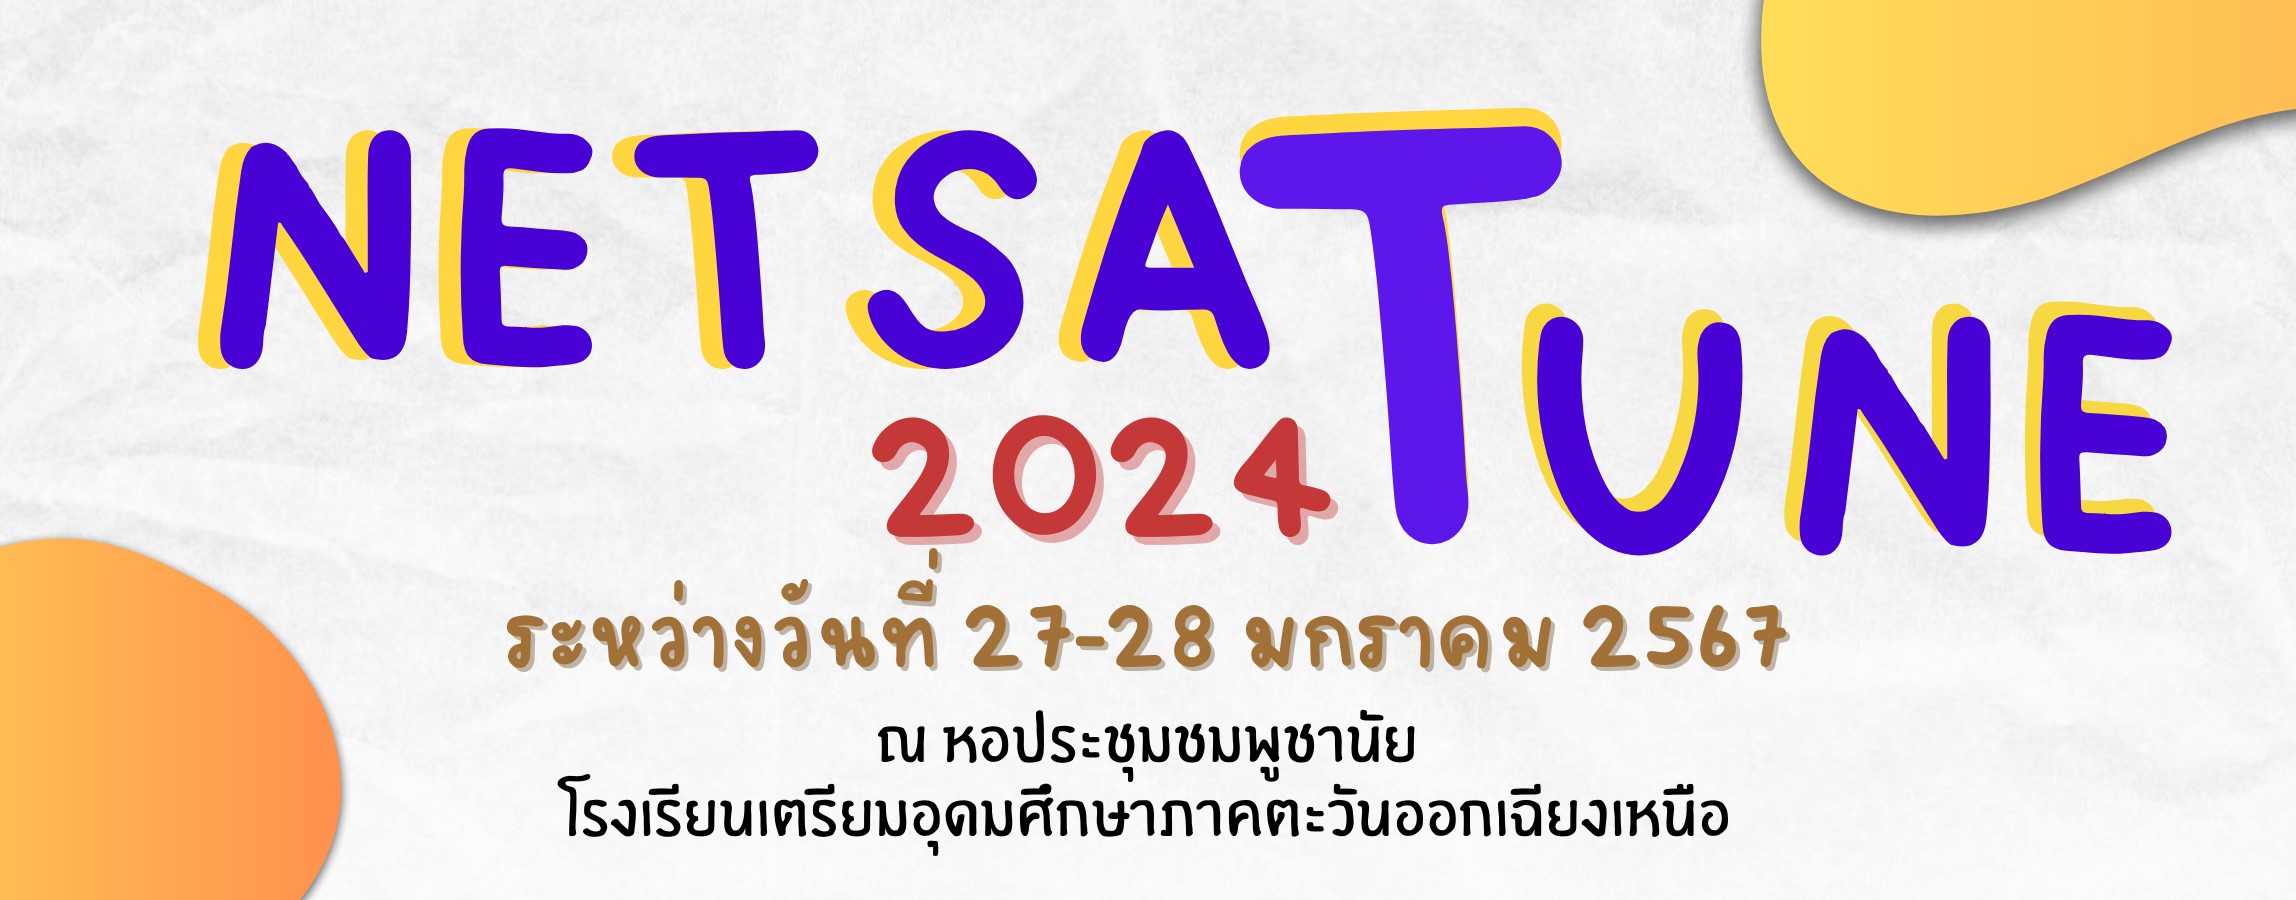 กำหนดการติว NETSAT 2024